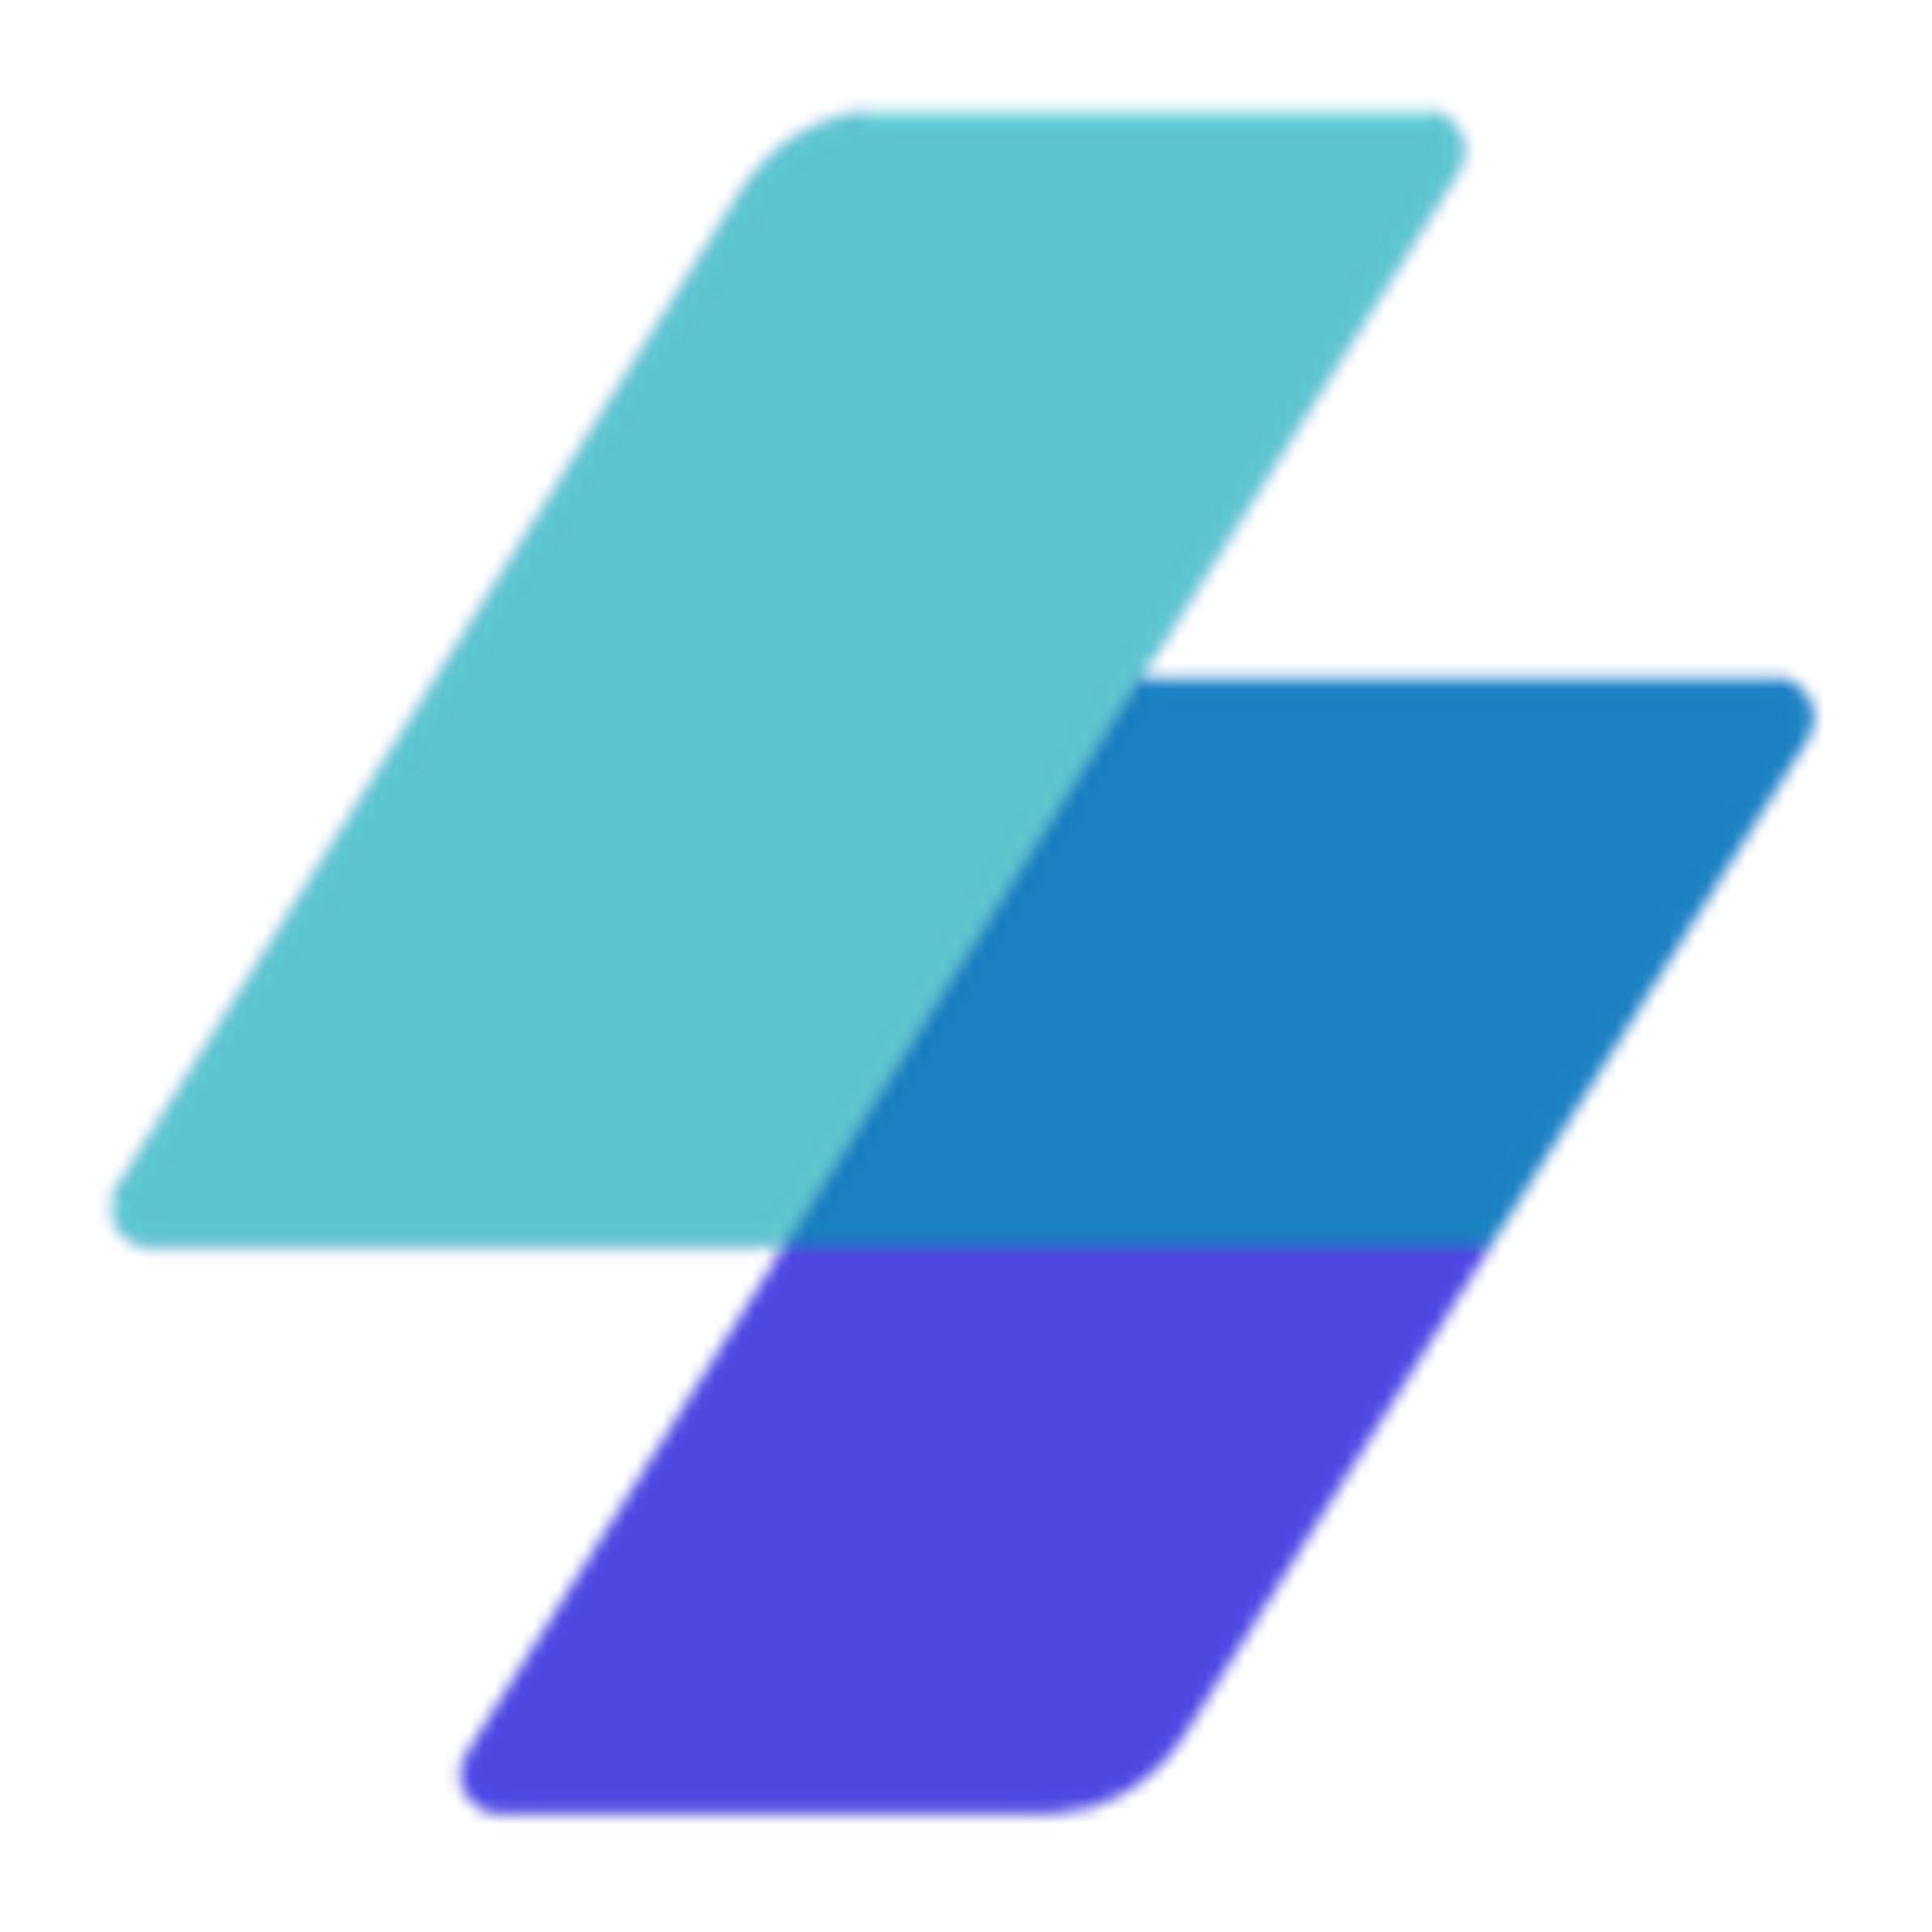 MailerSend Logo